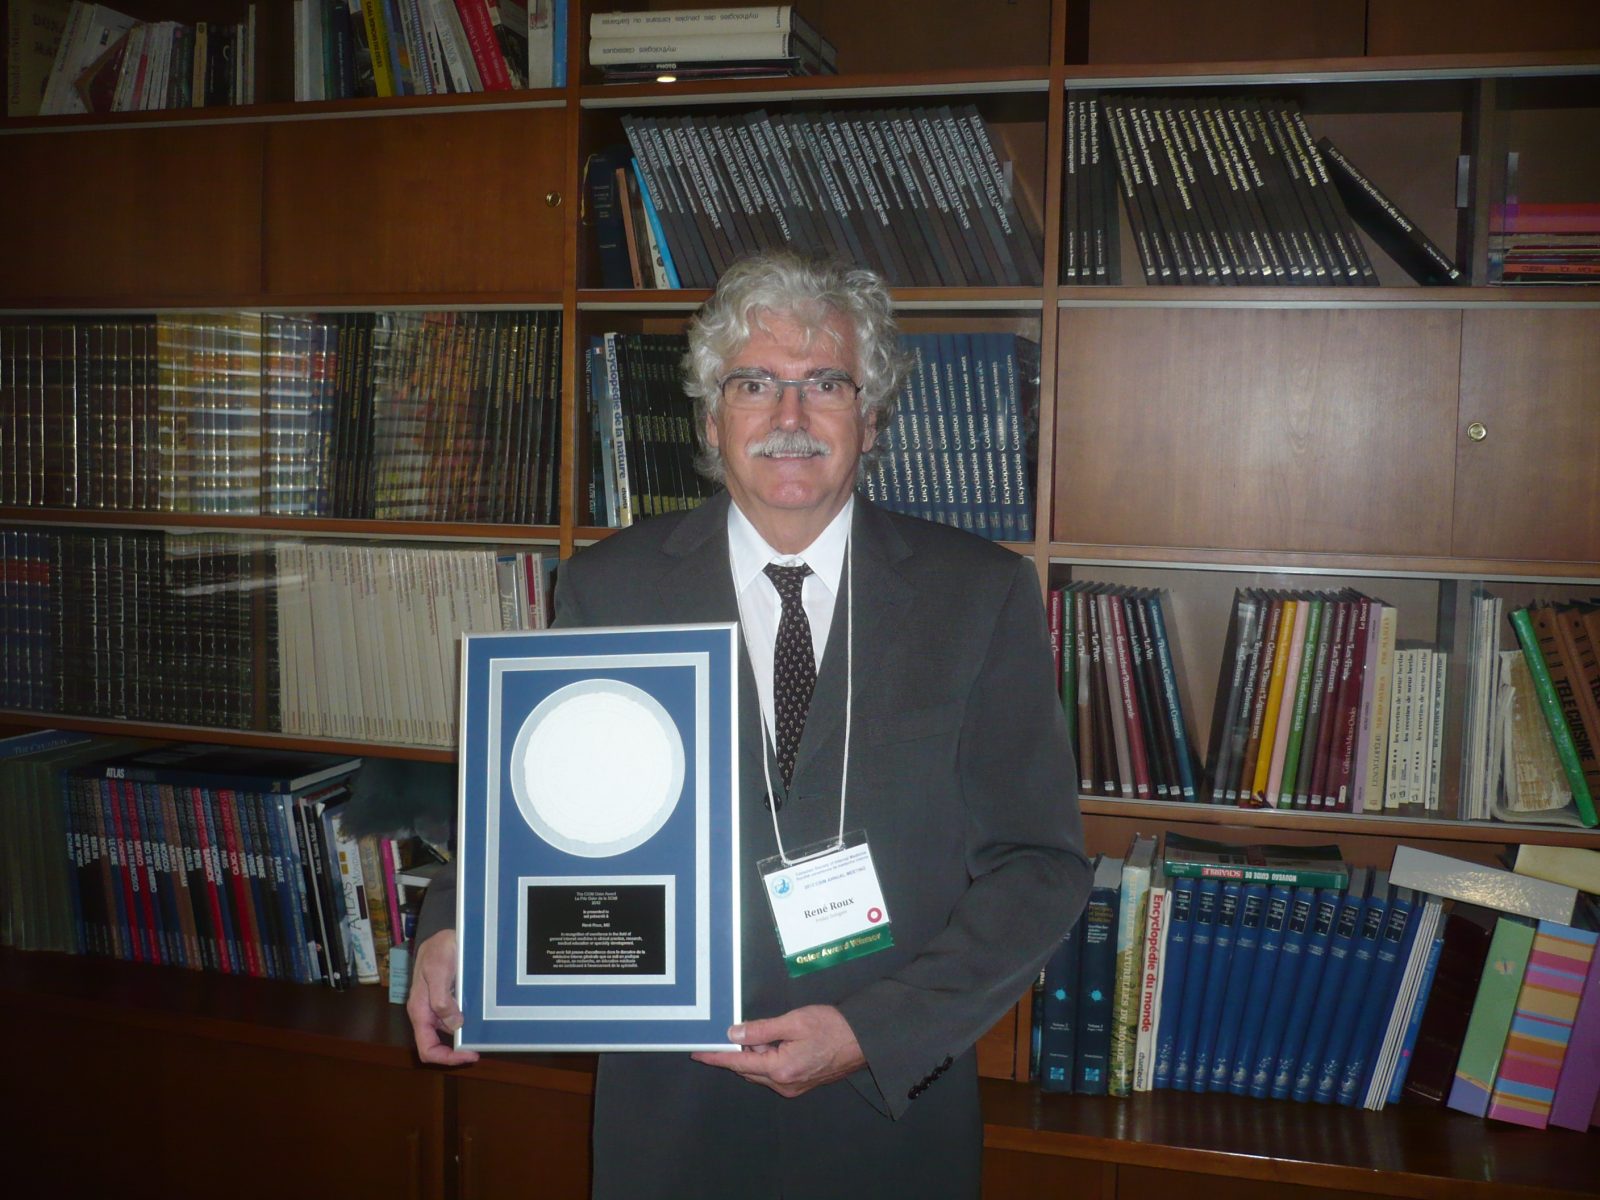 Le docteur René Roux reçoit le prix Osler 2012